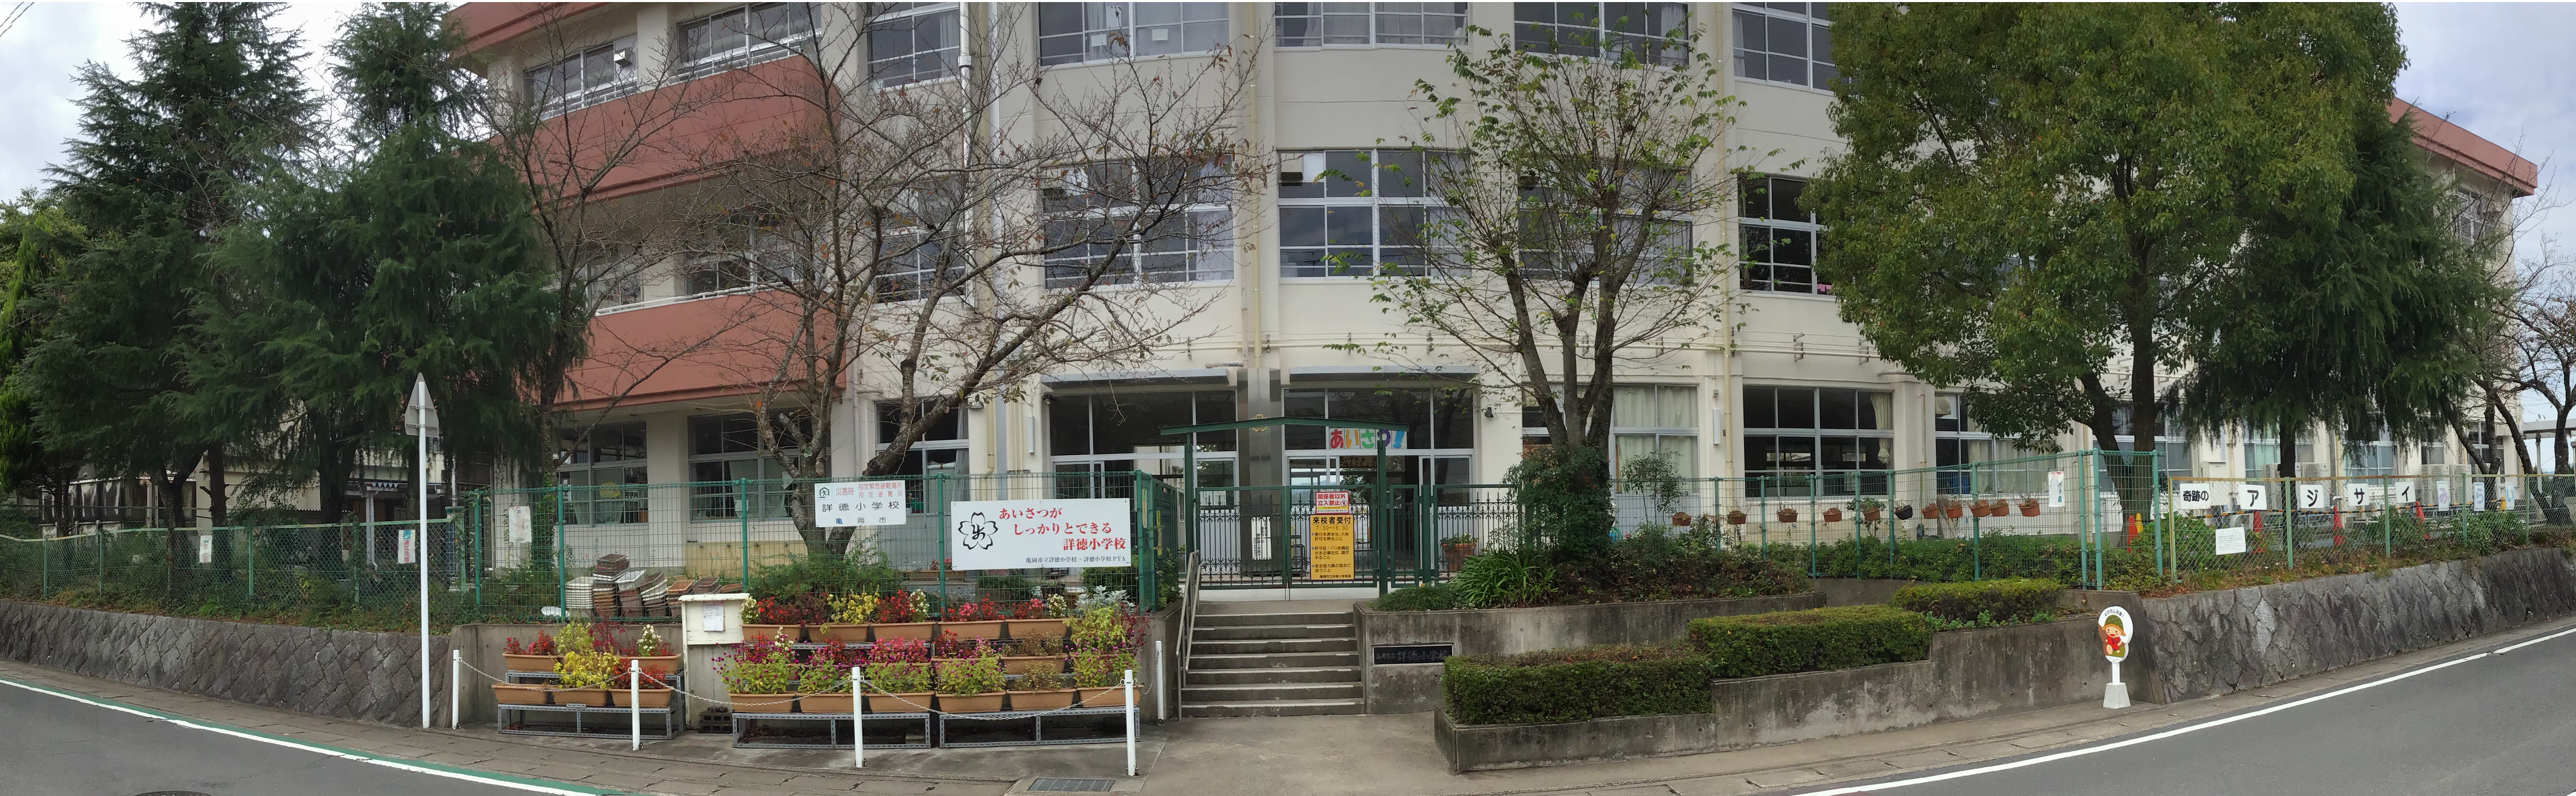 亀岡市立詳徳小学校のタイトル画像